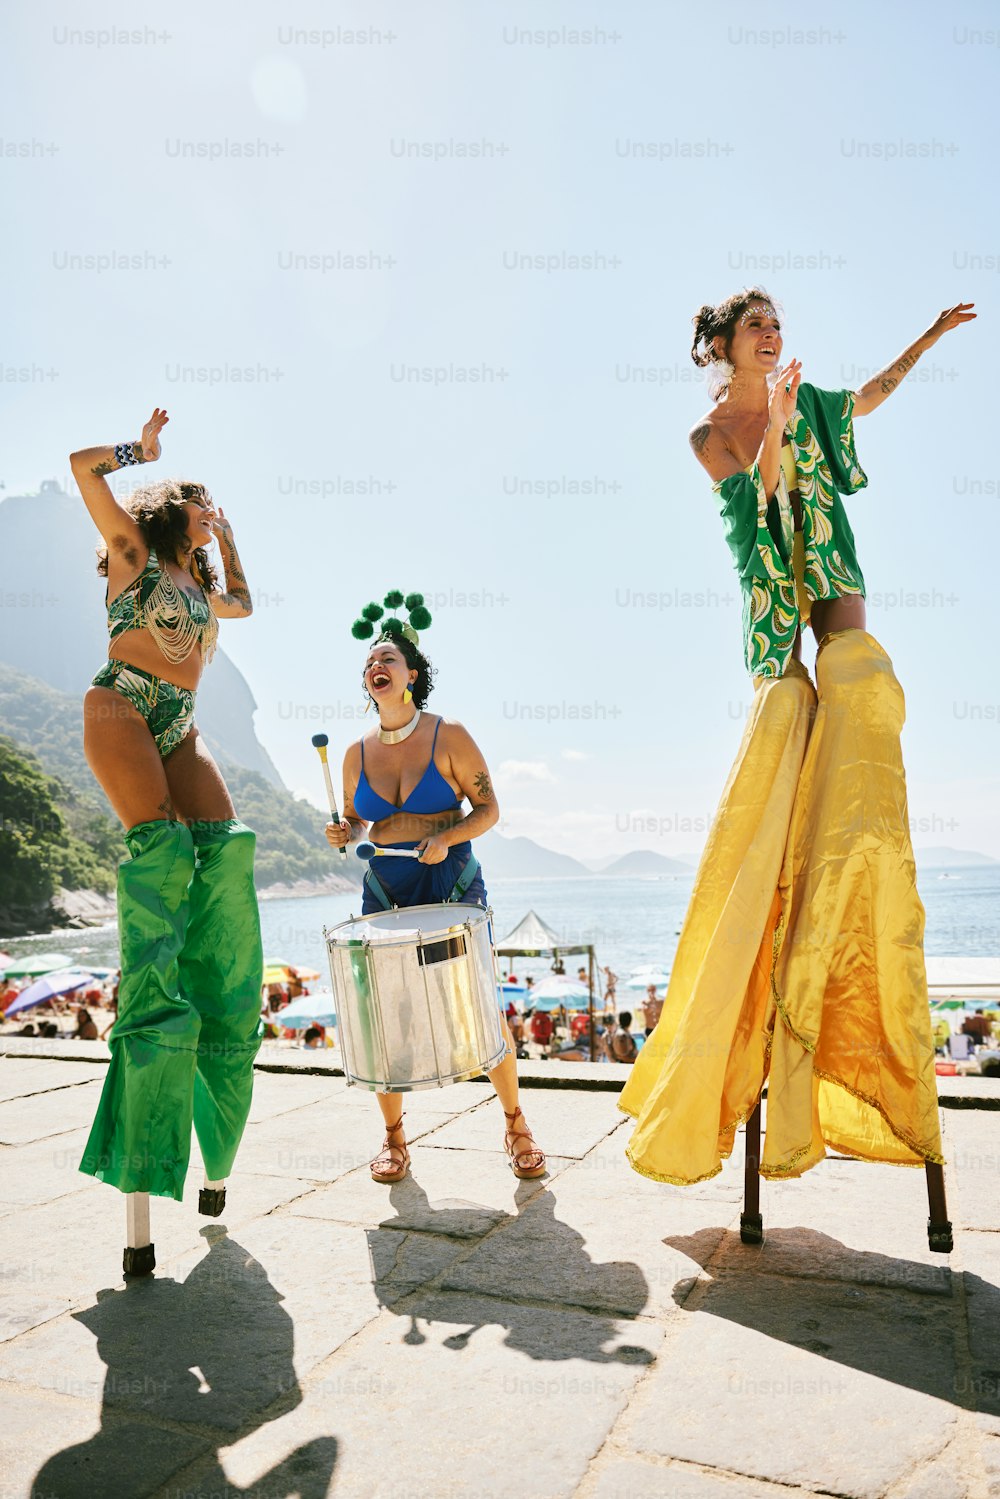 녹색과 노란색 의상을 입은 세 명의 여성이 드럼을 연주하고 있다